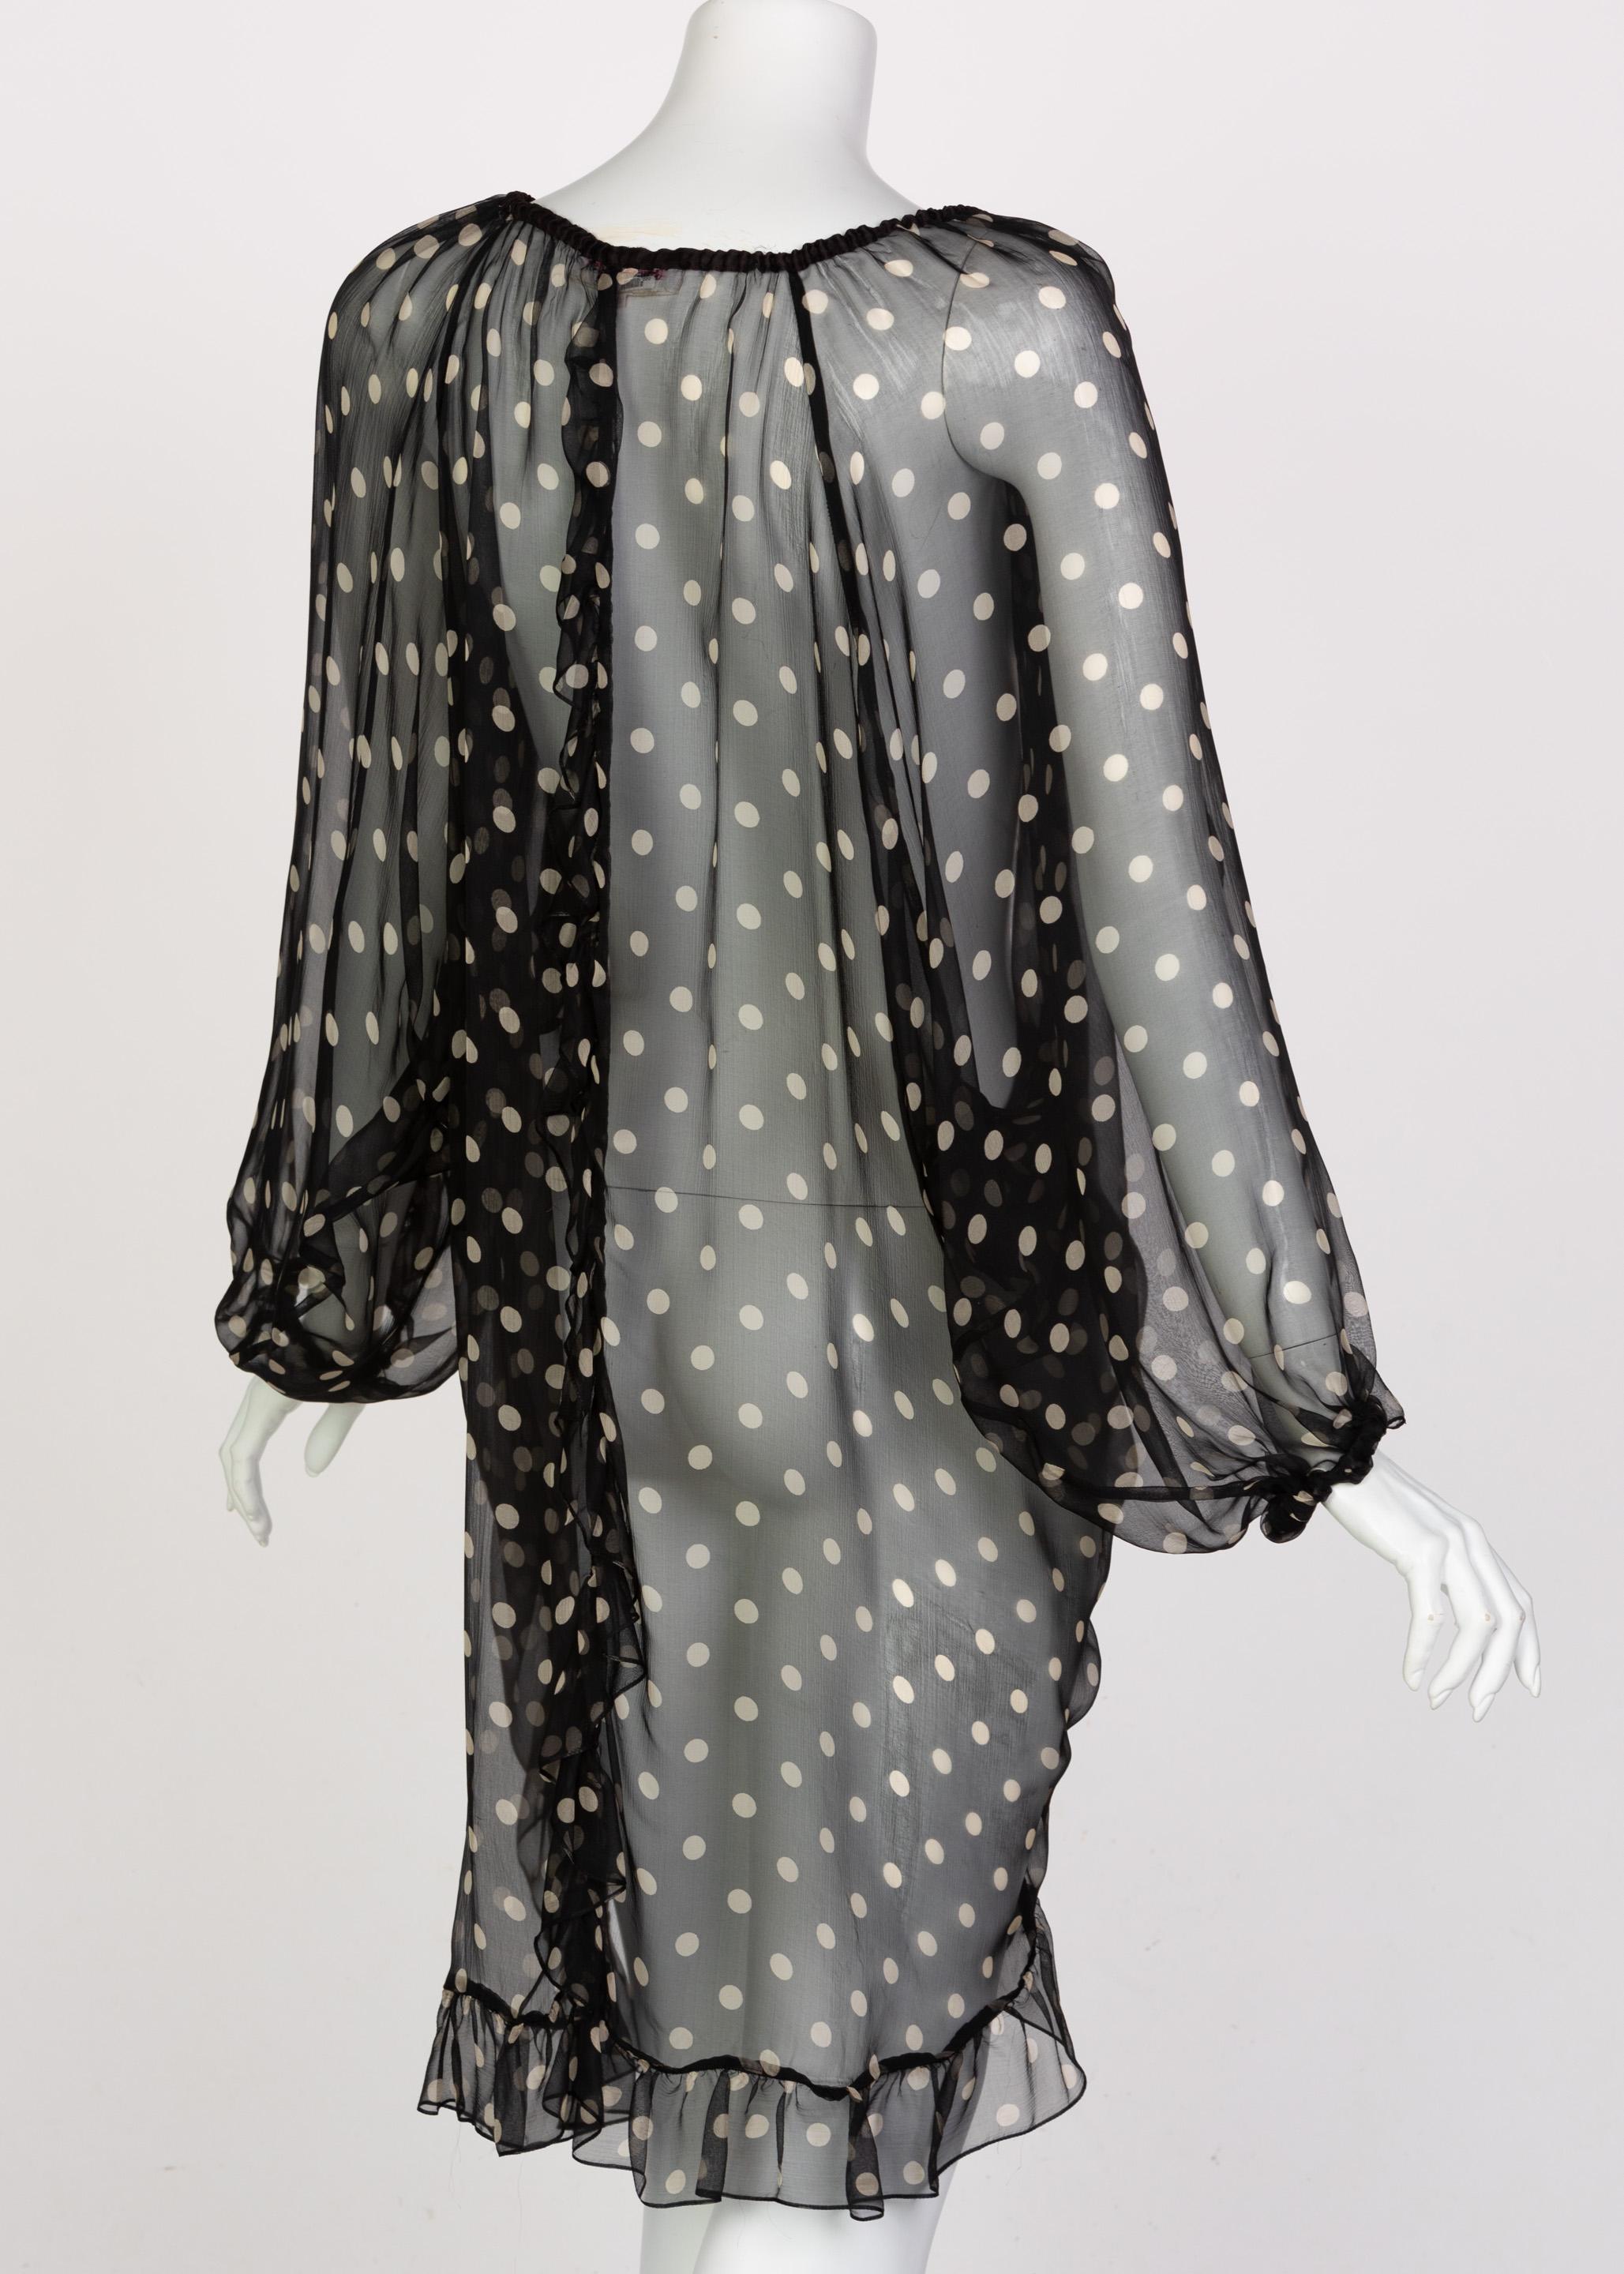  Yves Saint Laurent Black Beige Polka Dot Ruffle Jacket Top Skirt Set YSL 1980s 4